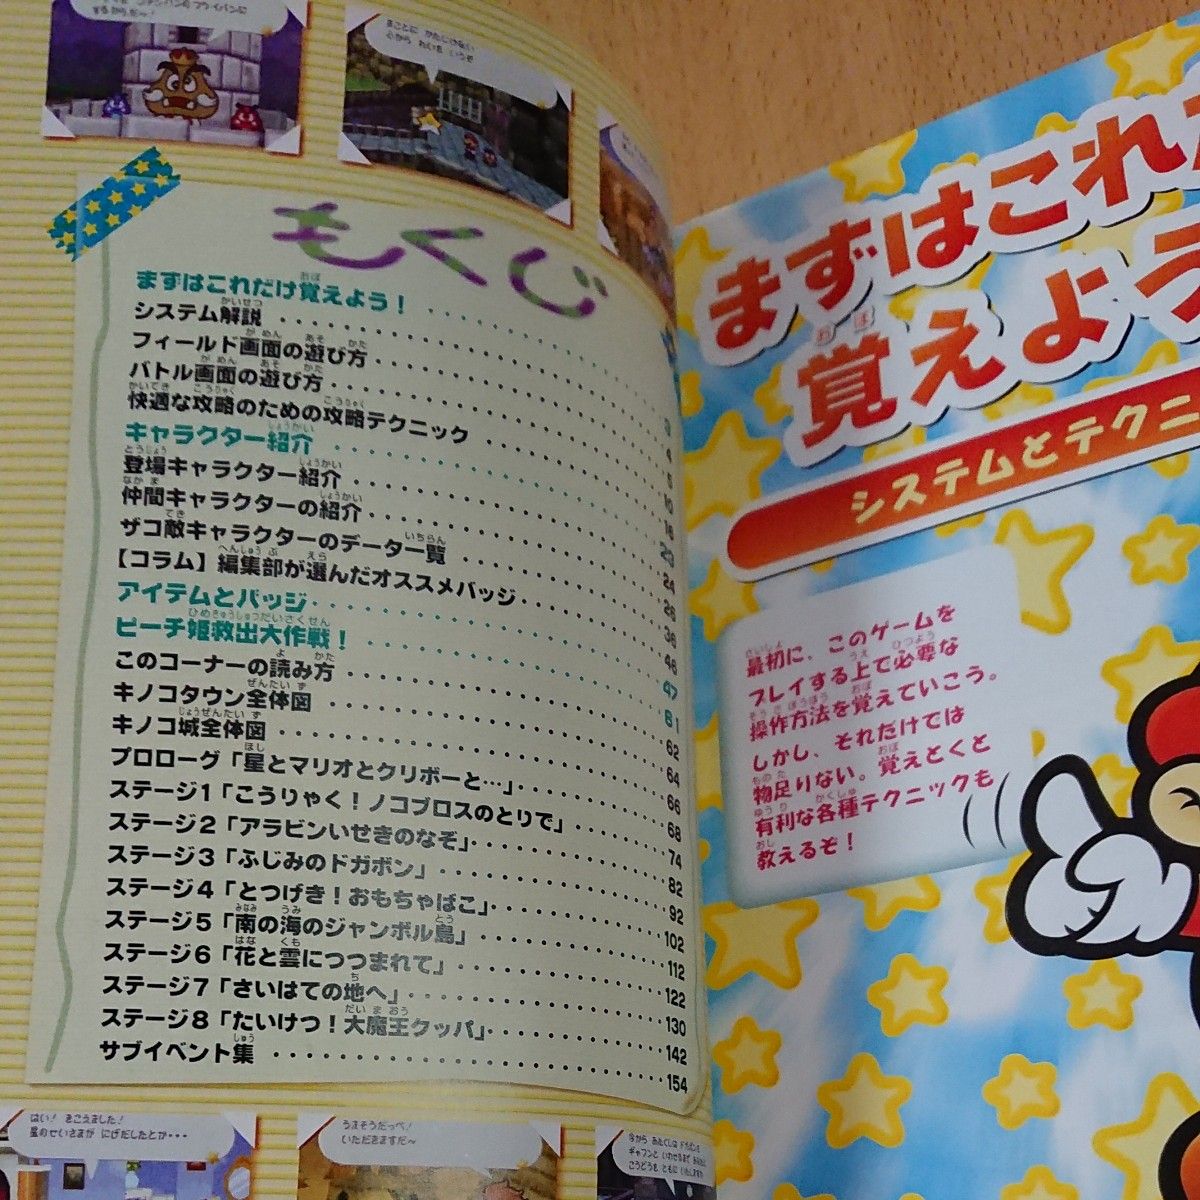 【N64ゲーム攻略本】マリオストーリー 攻略ガイドブック  /  ニンテンドー64